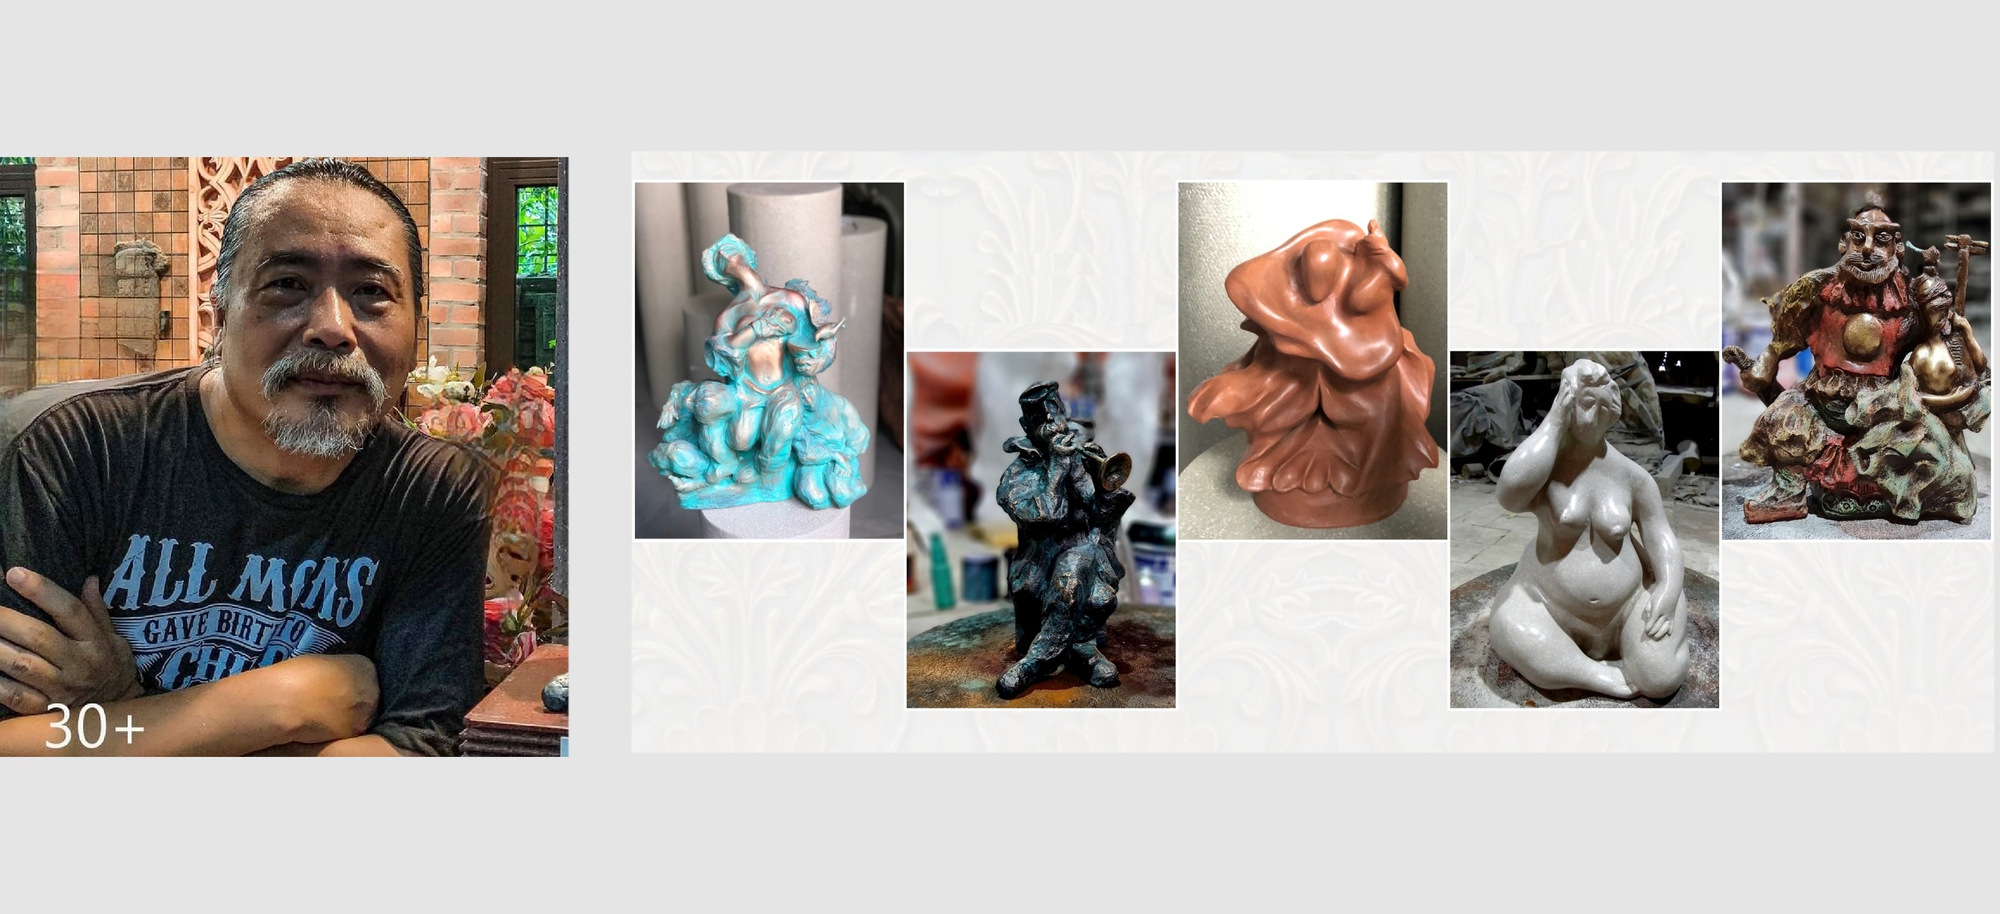 Điêu khắc Online 30+ lần thứ 2: Những xúc cảm nghệ thuật vượt qua đại dịch - Ảnh 7.